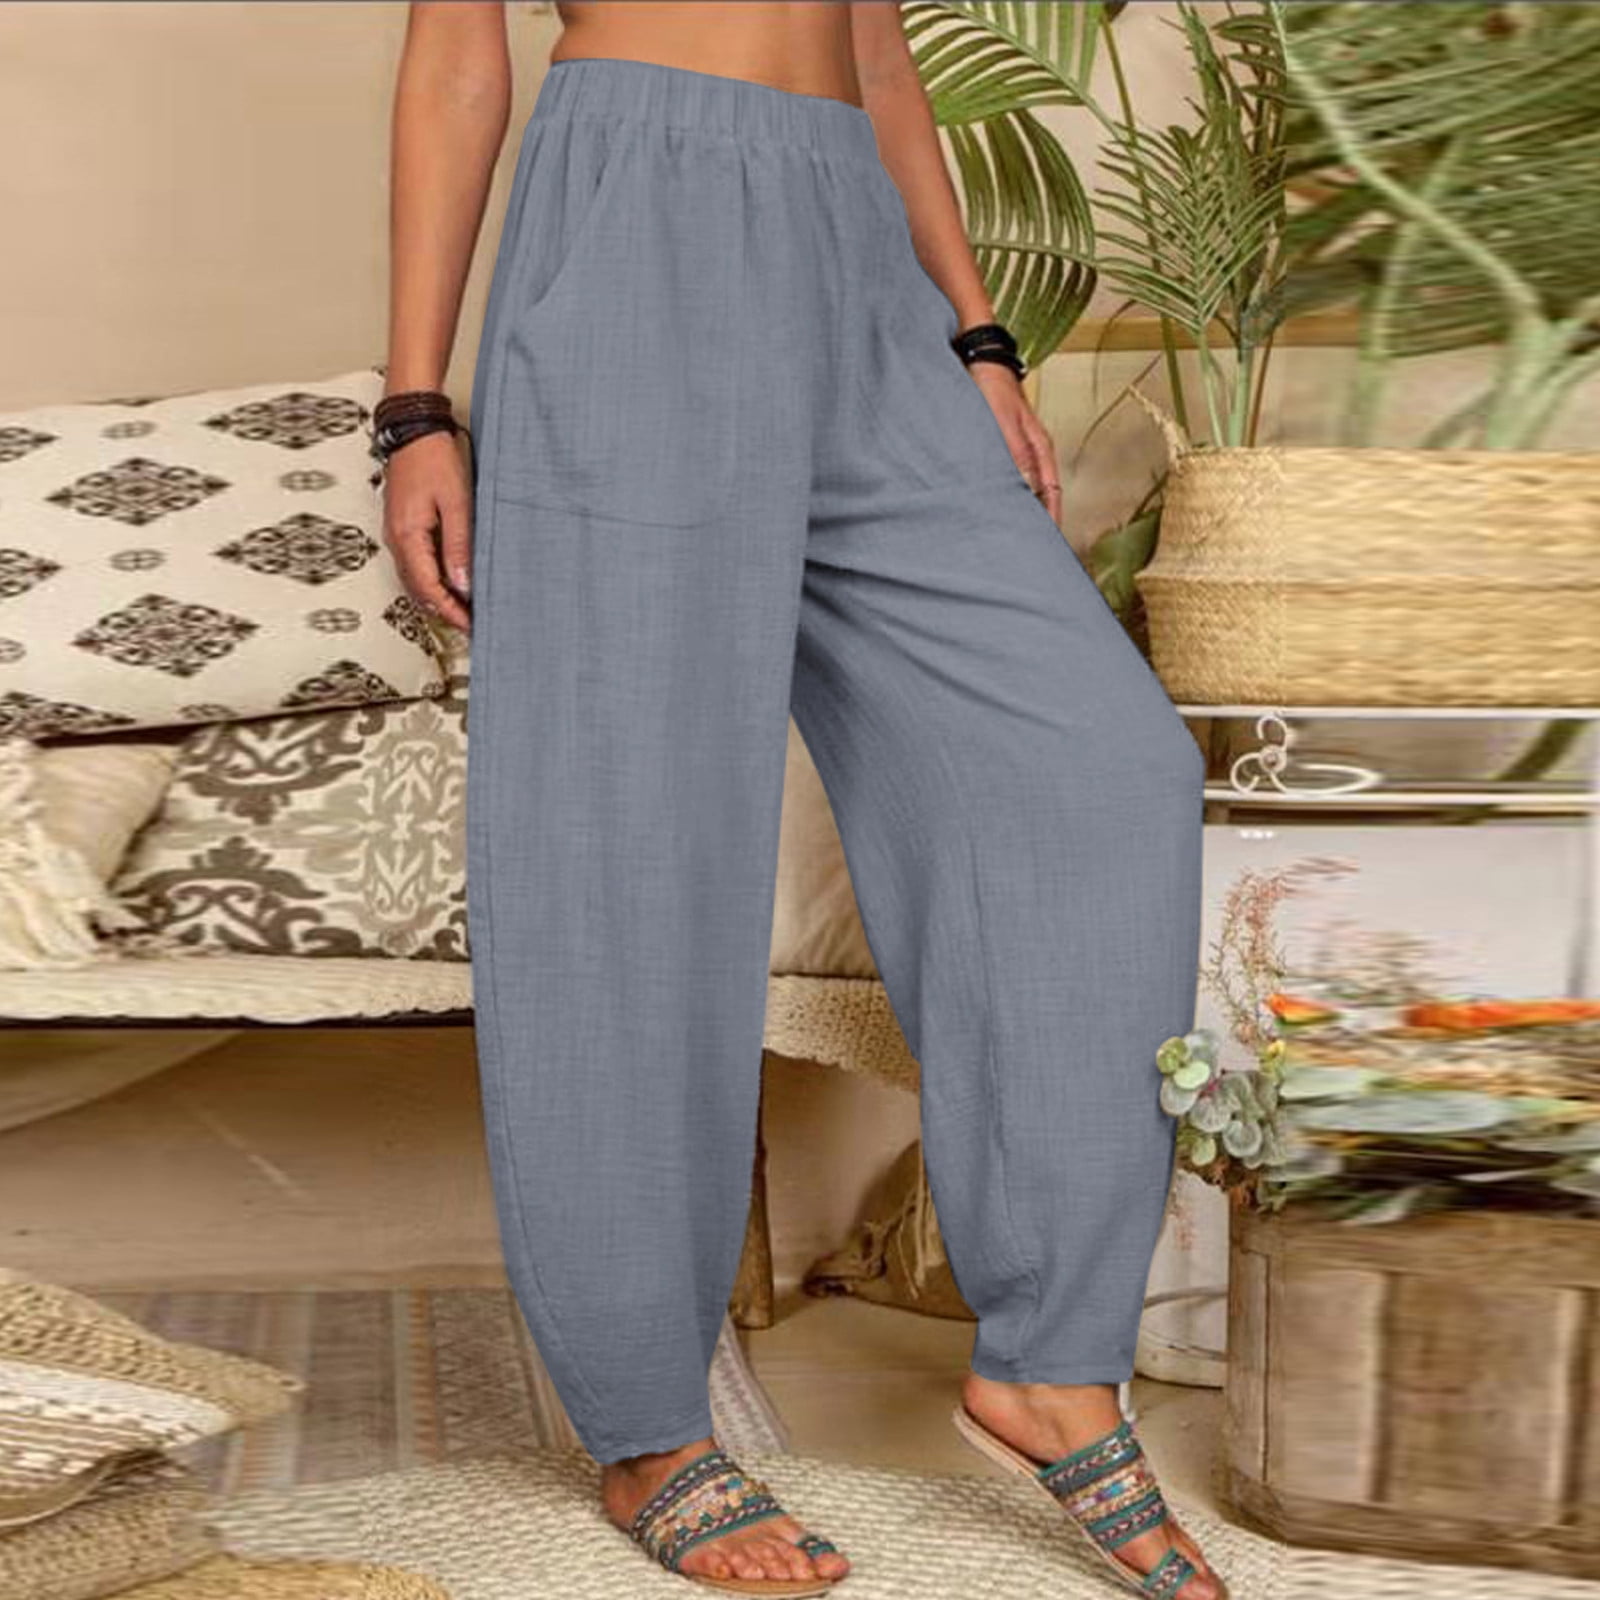 Cotonie Women Cotton Linen Harem Pants Loose Yoga Pants with Pockets  Elastic Waist Wide Leg Solid Color Casual Long Pants Dance Workout Joggers  Pants 